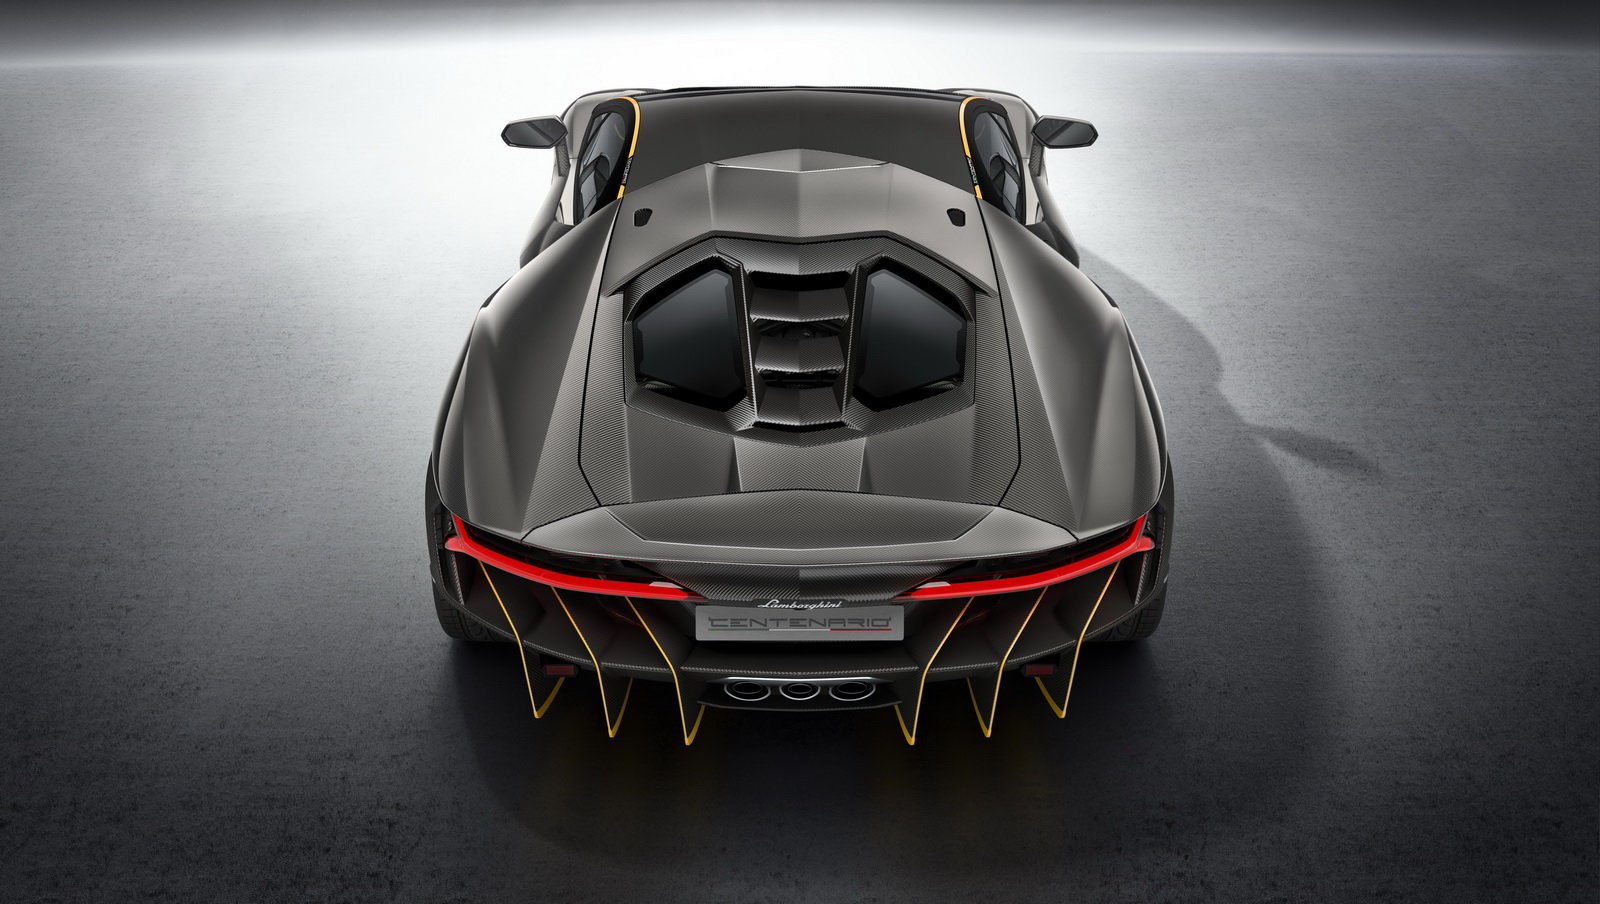 Centenario je nejnovějším speciálem Lamborghini, vznikne jen čtyřicet kusů.